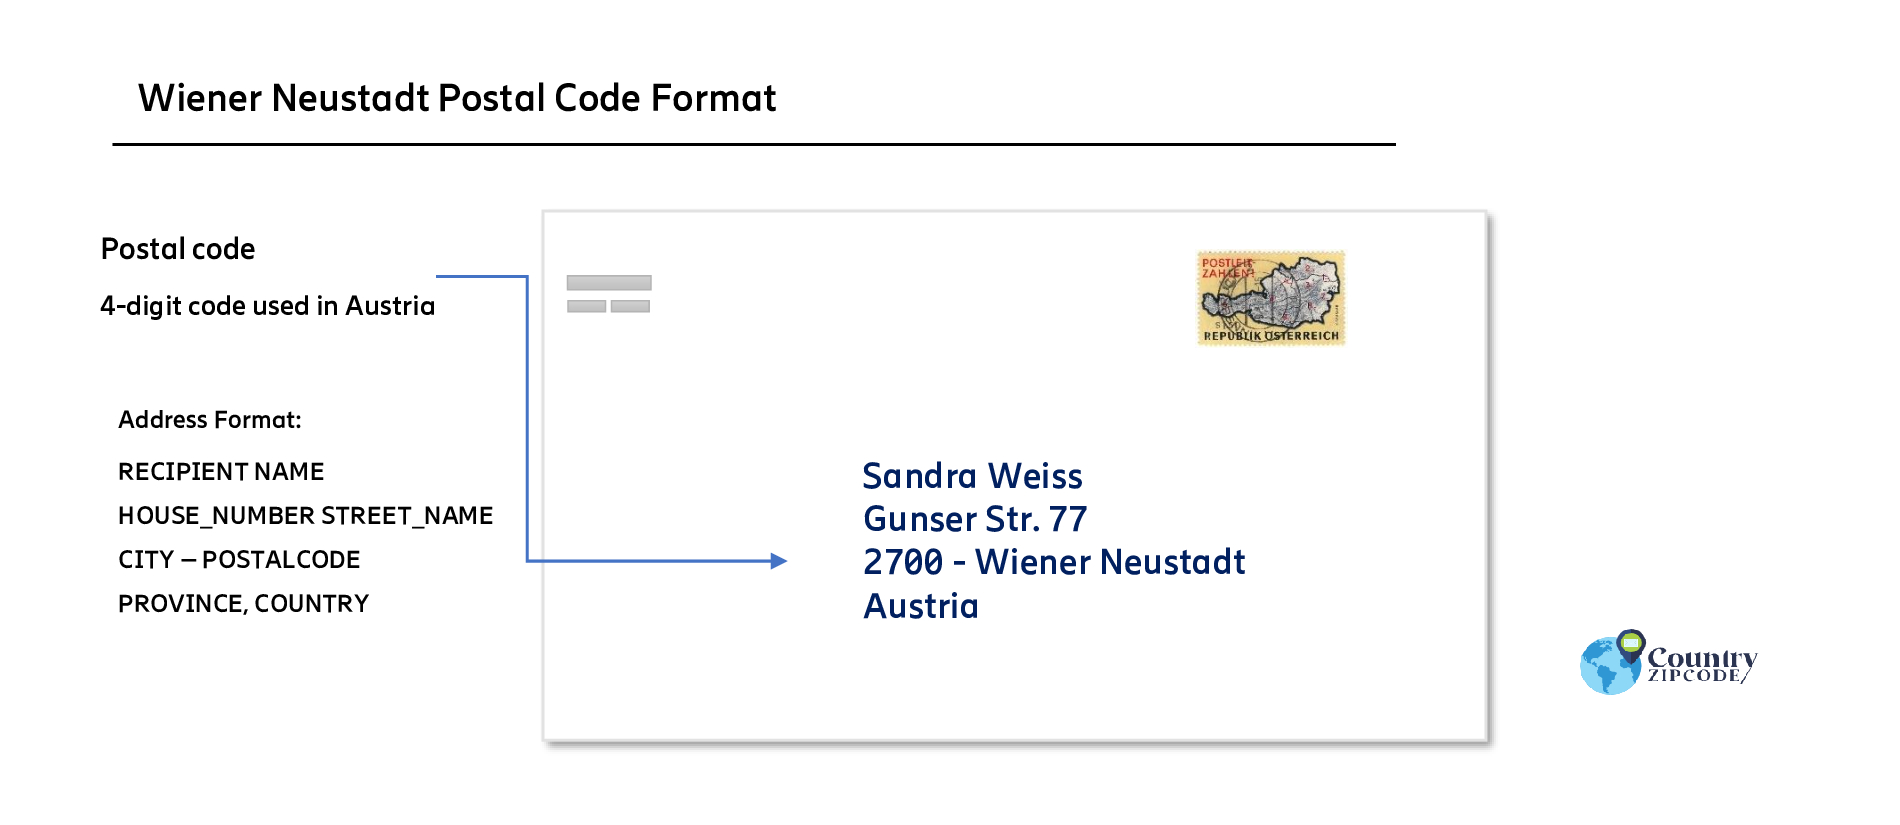 Wiener Neustadt Austria Postal code format